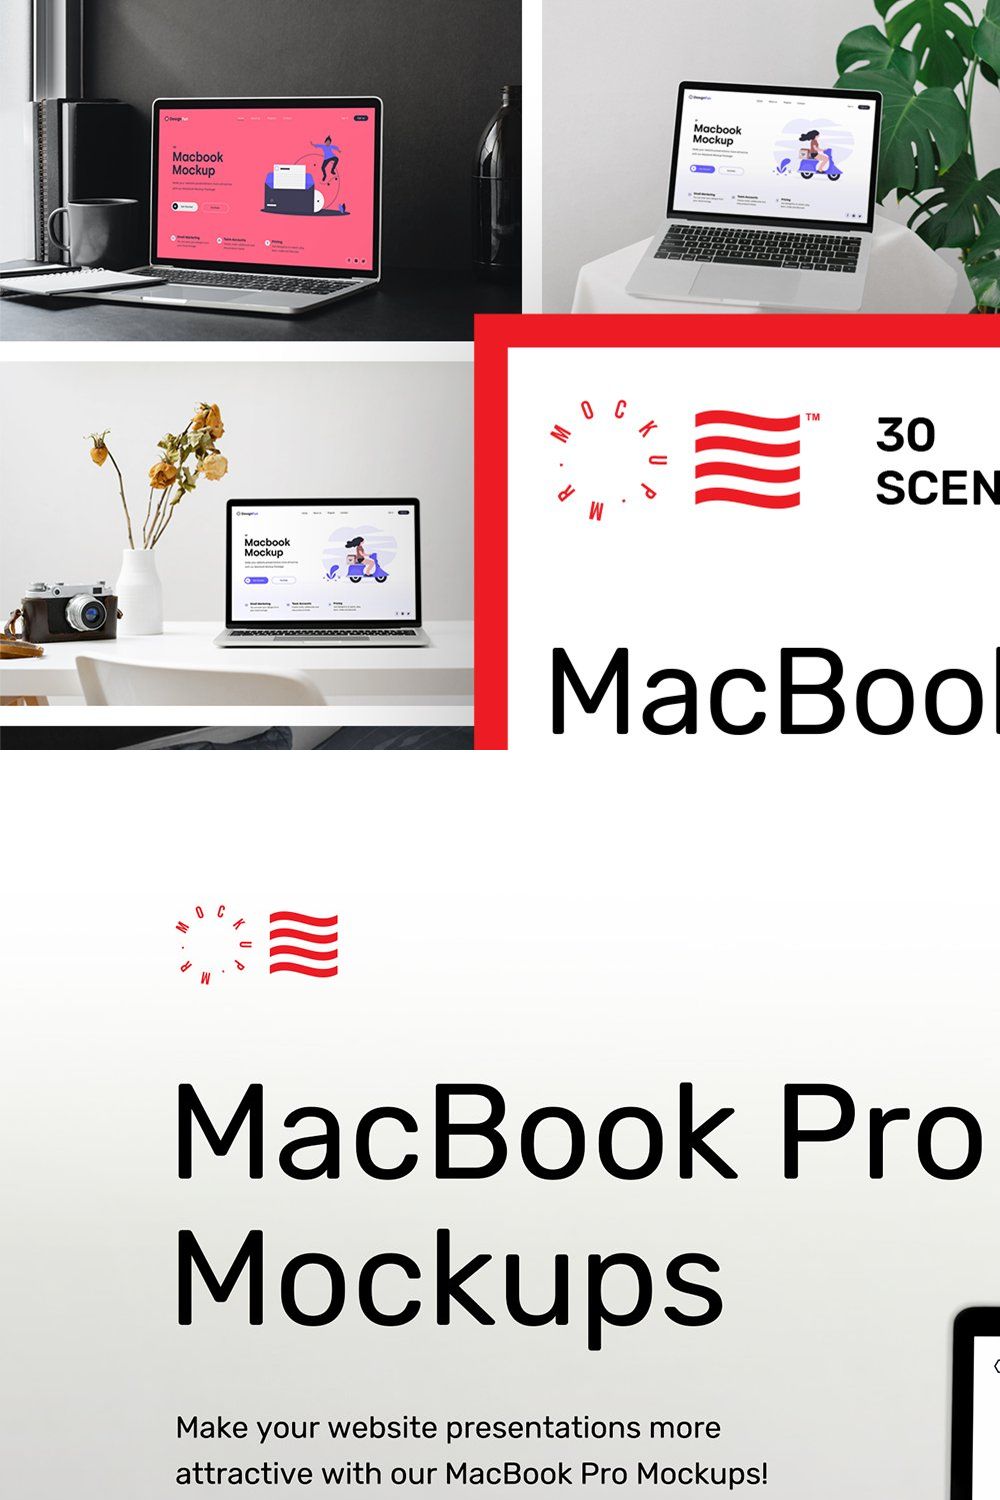 MacBook Mockups - Workspace Mockups pinterest preview image.